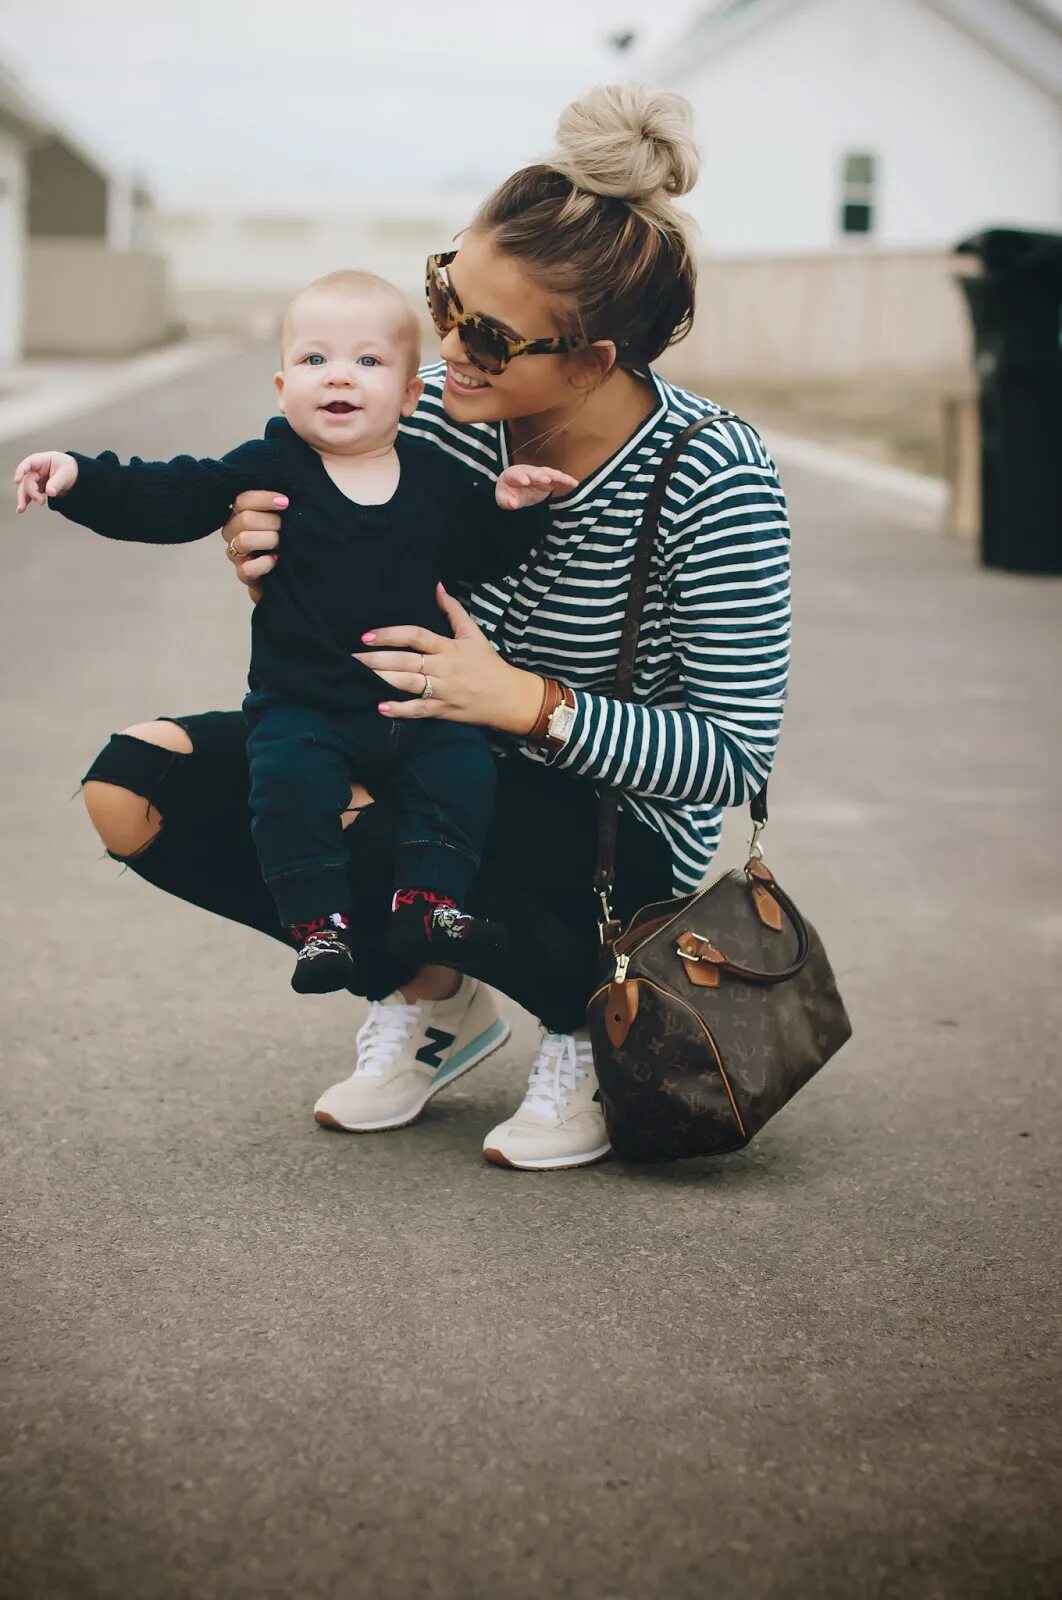 См мам ростов. Фотосессия мама в пиджаке и малыш. Фотосессия мама с сыном в белых рубашках. Рост мамочки.